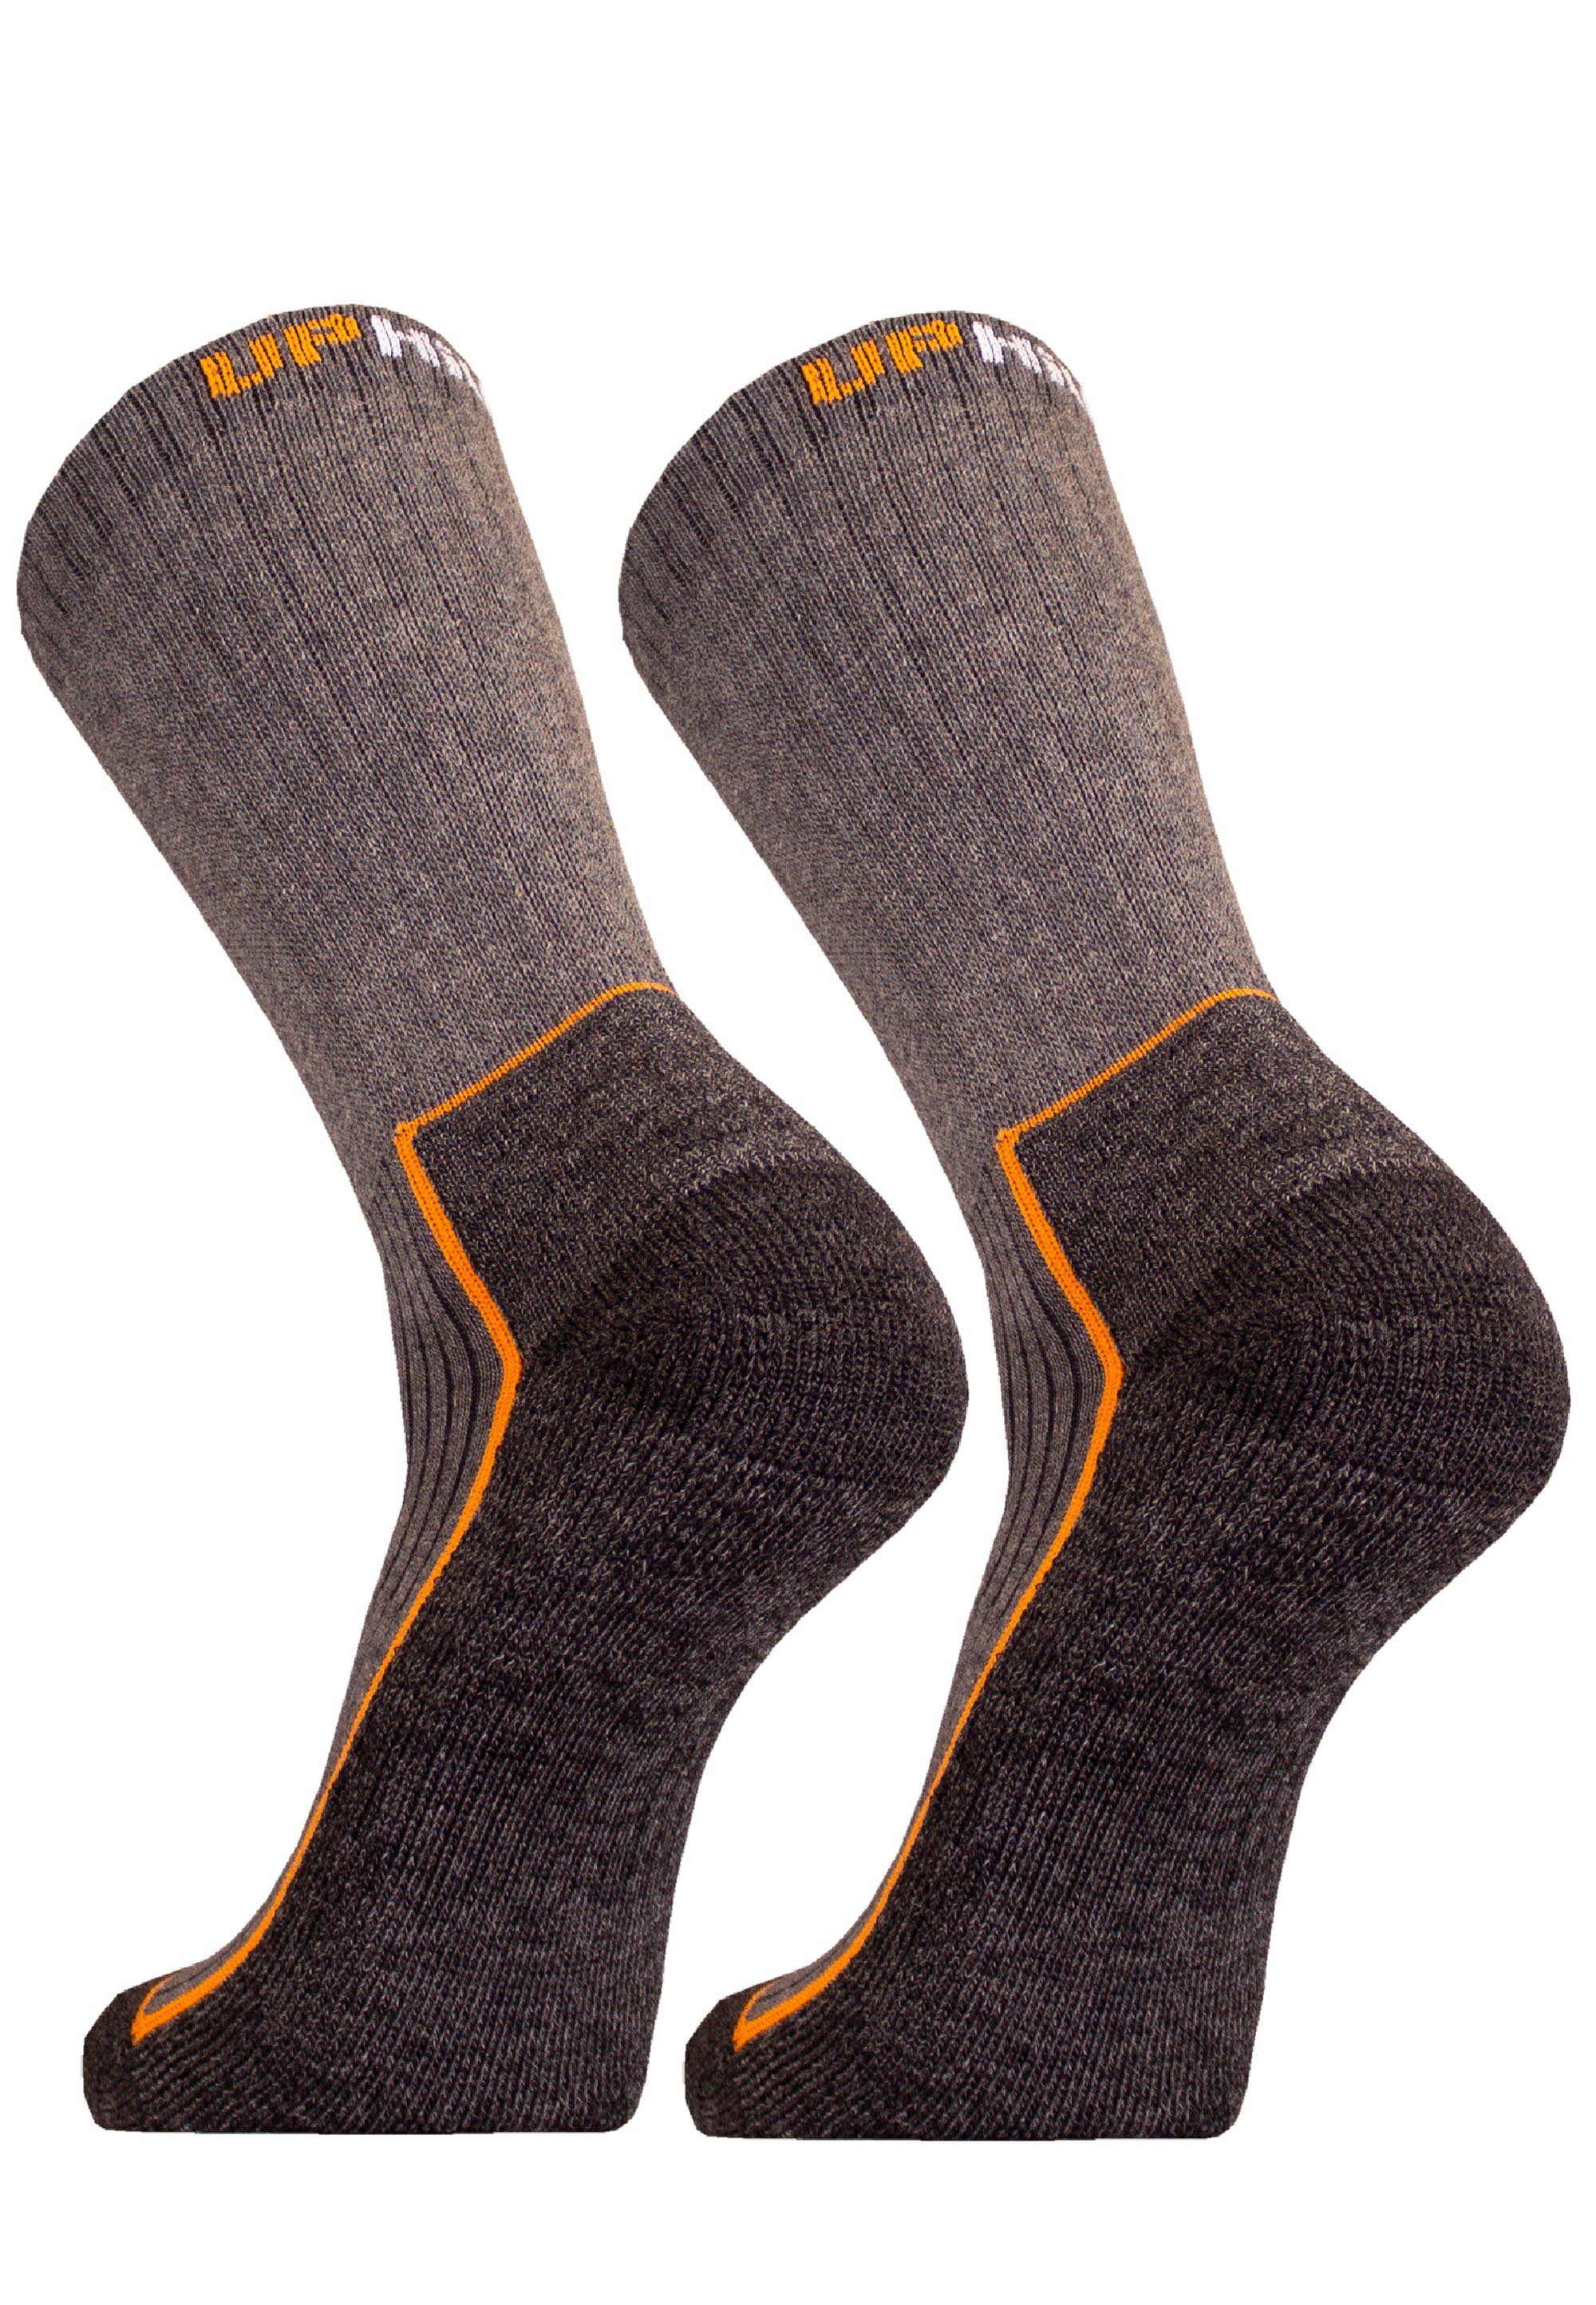 UphillSport Socken SAANA 2er Pack grau geformter Ferse mit (2-Paar) speziell